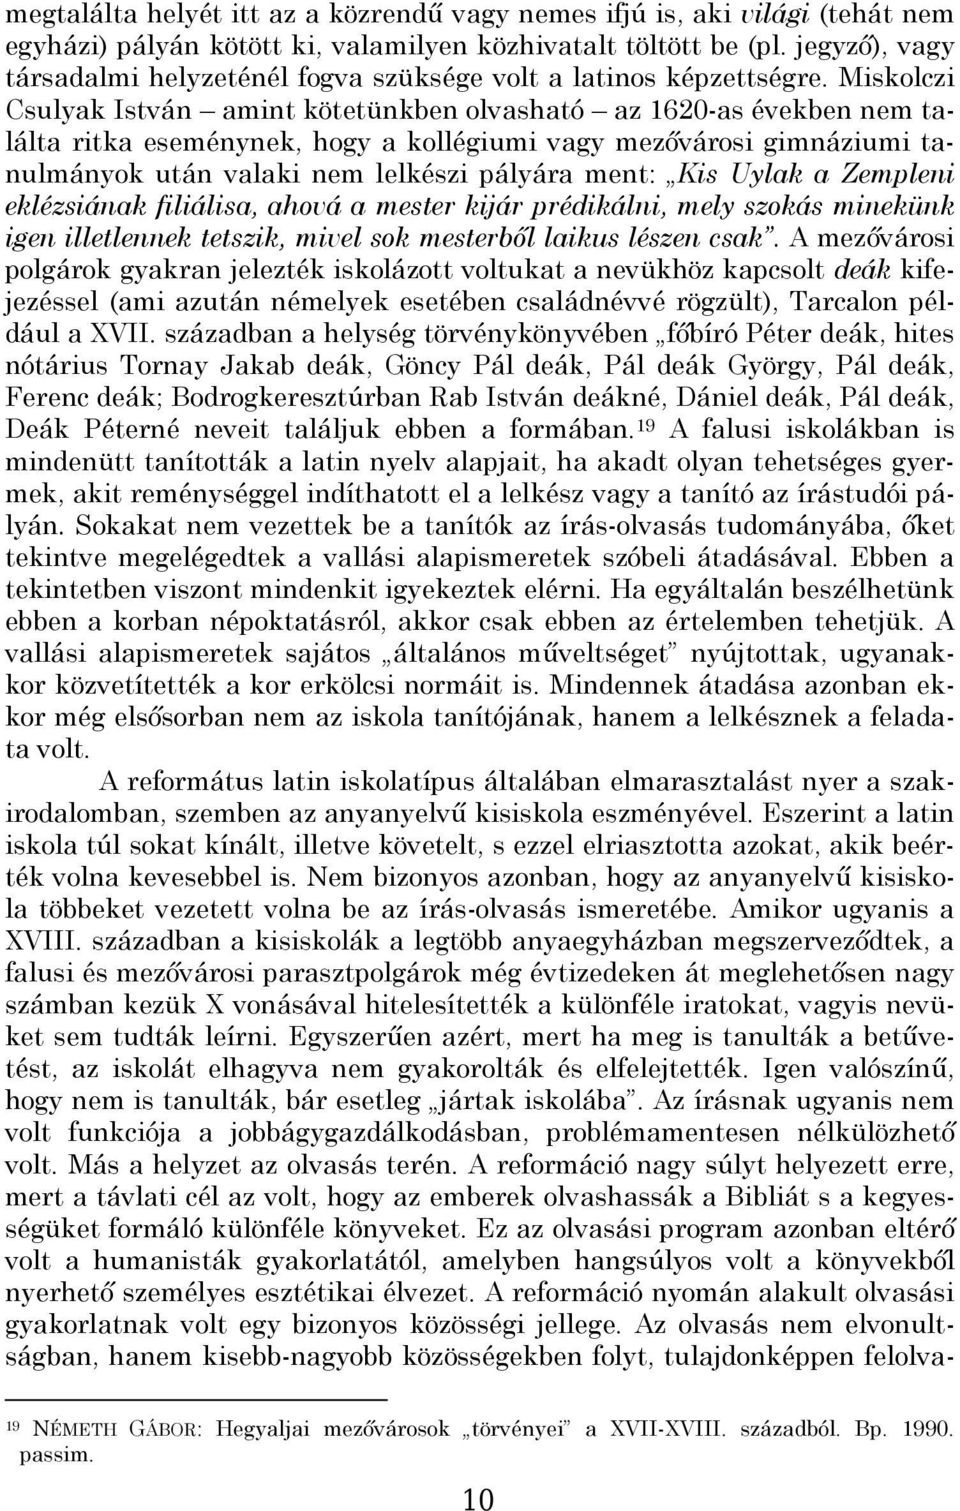 Miskolczi Csulyak István amint kötetünkben olvasható az 1620-as években nem találta ritka eseménynek, hogy a kollégiumi vagy mezővárosi gimnáziumi tanulmányok után valaki nem lelkészi pályára ment: